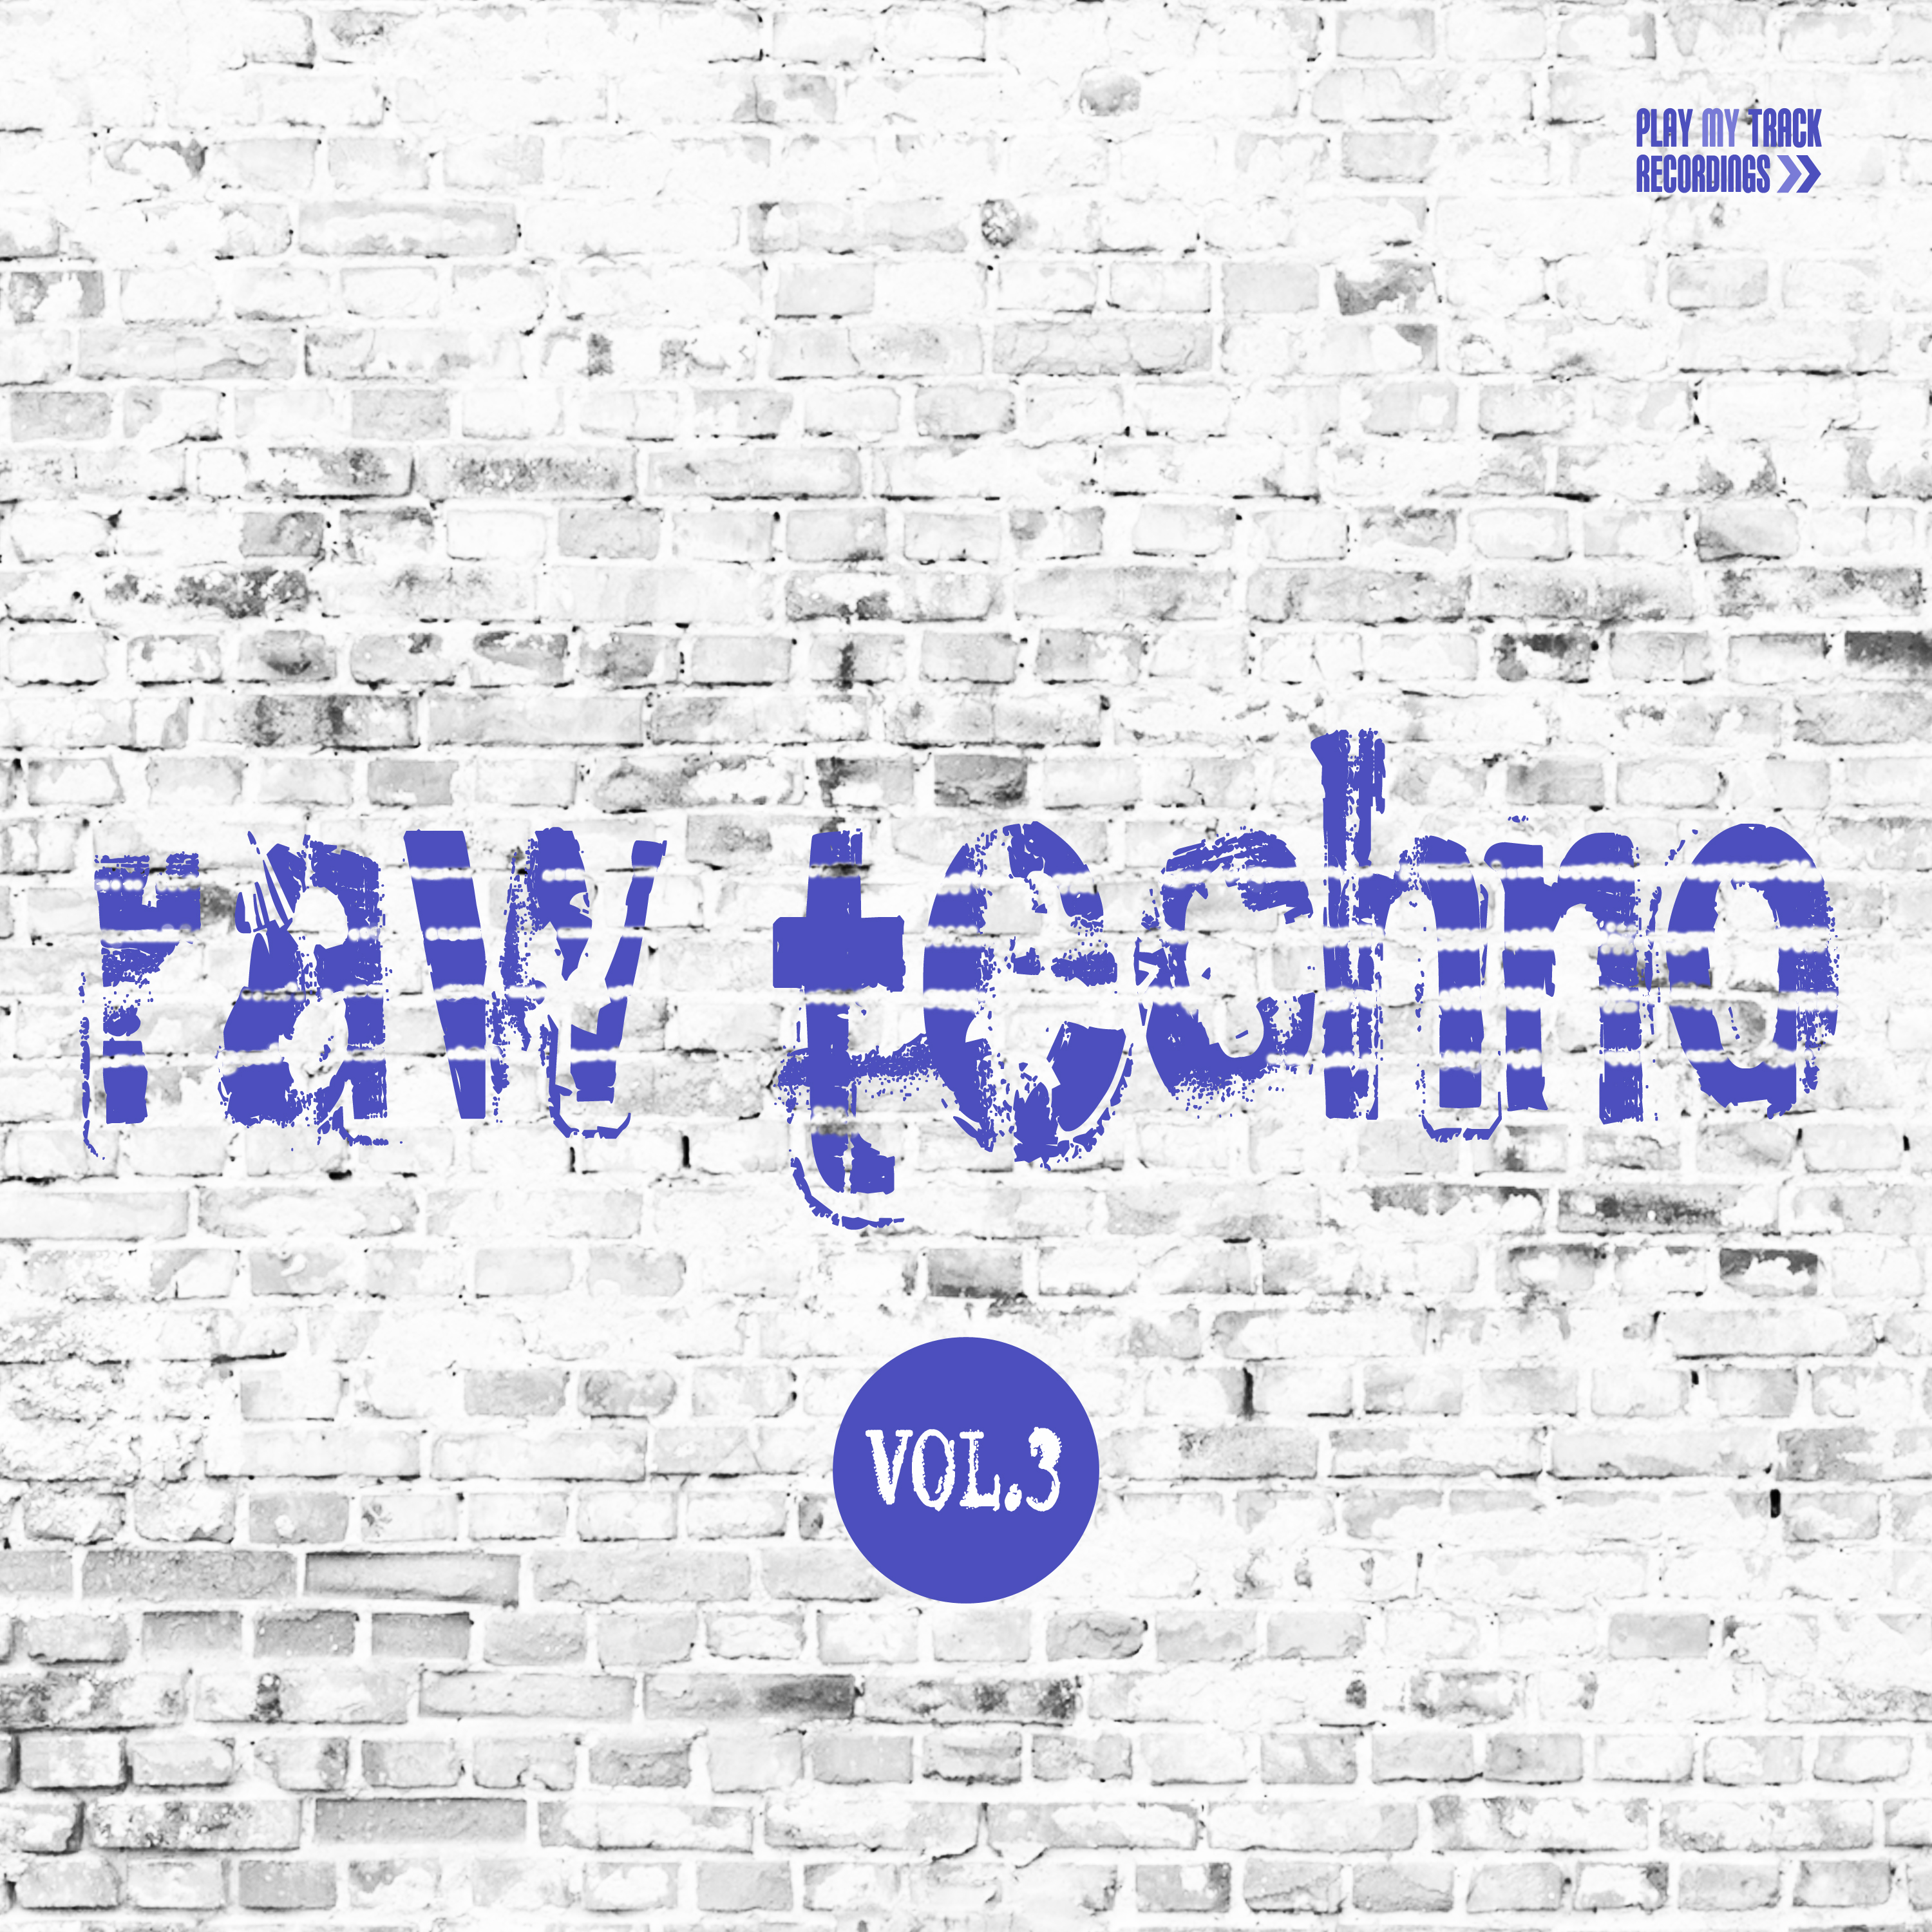 Raw Techno, Vol. 3